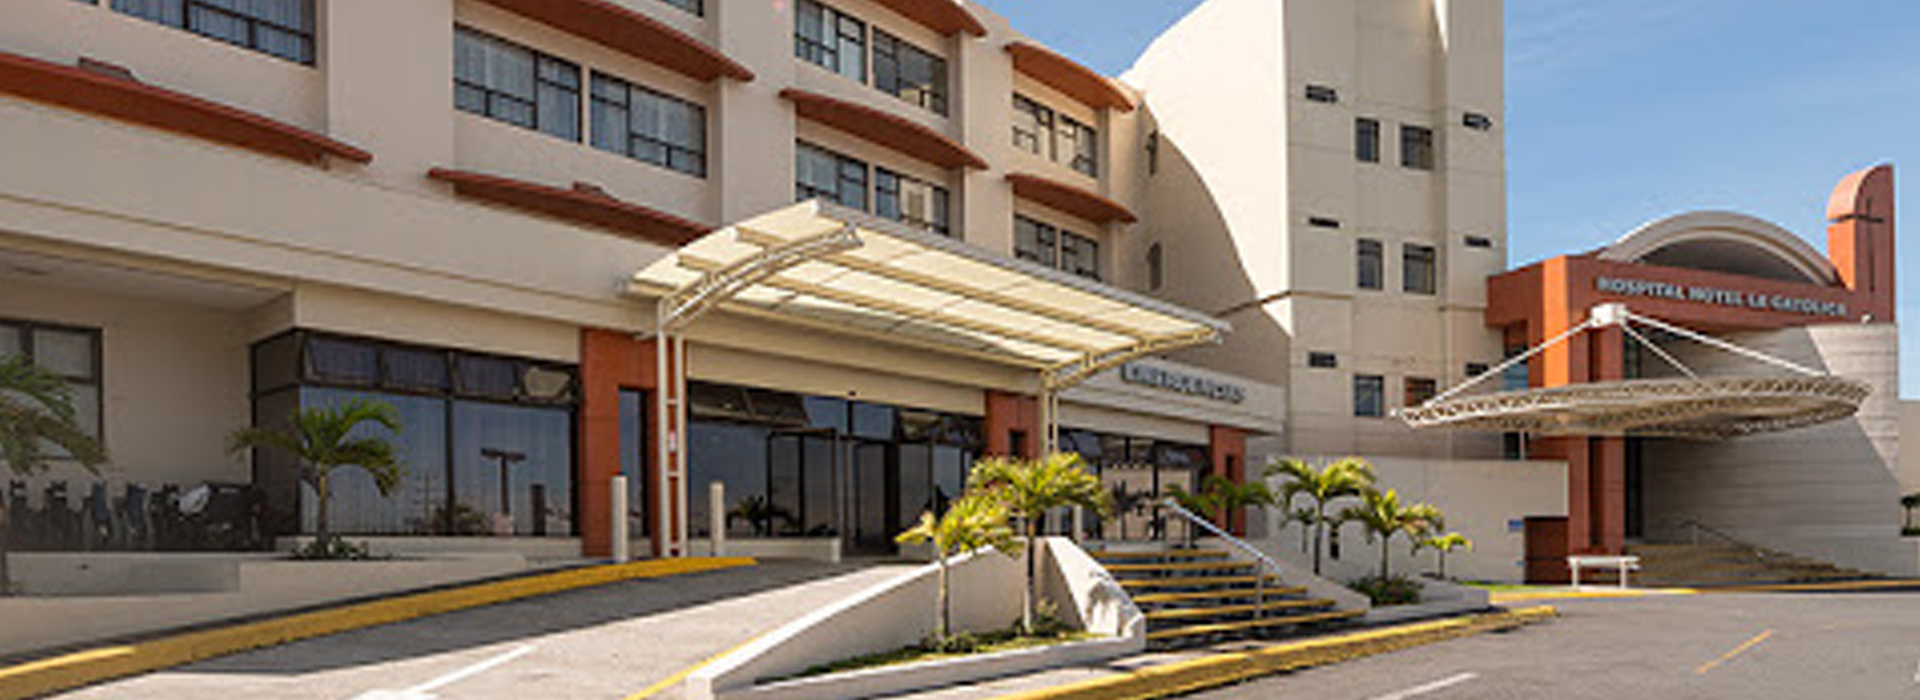 Picture La Catolica Hospital, San Jose, Costa Rica.